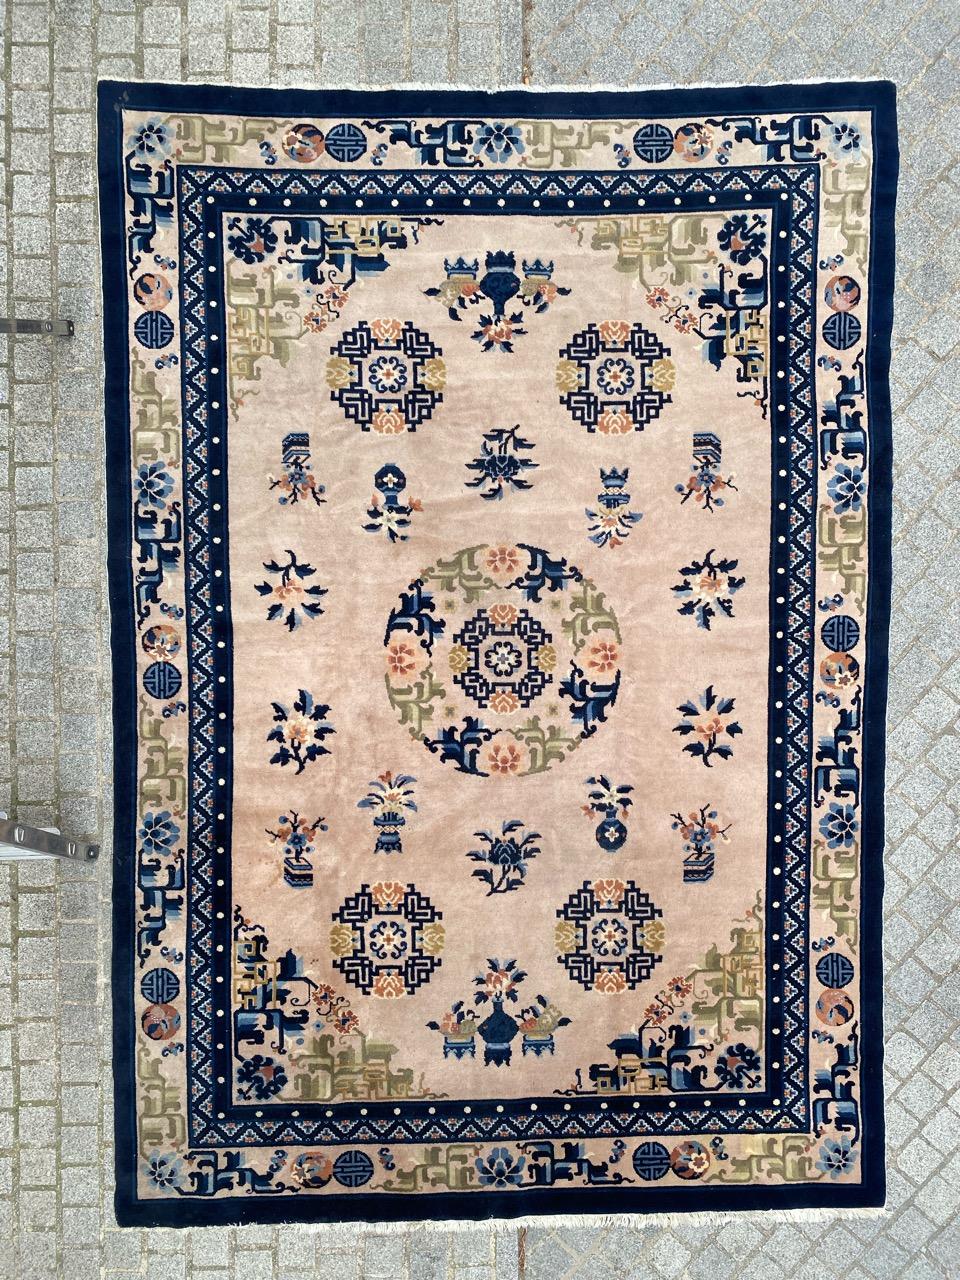 Schöner chinesischer Peking-Teppich aus der Mitte des Jahrhunderts mit schönem chinesischen Art-Déco-Design und schönen Farben, komplett handgeknüpft mit Wollsamt auf Baumwollbasis.

✨✨✨
